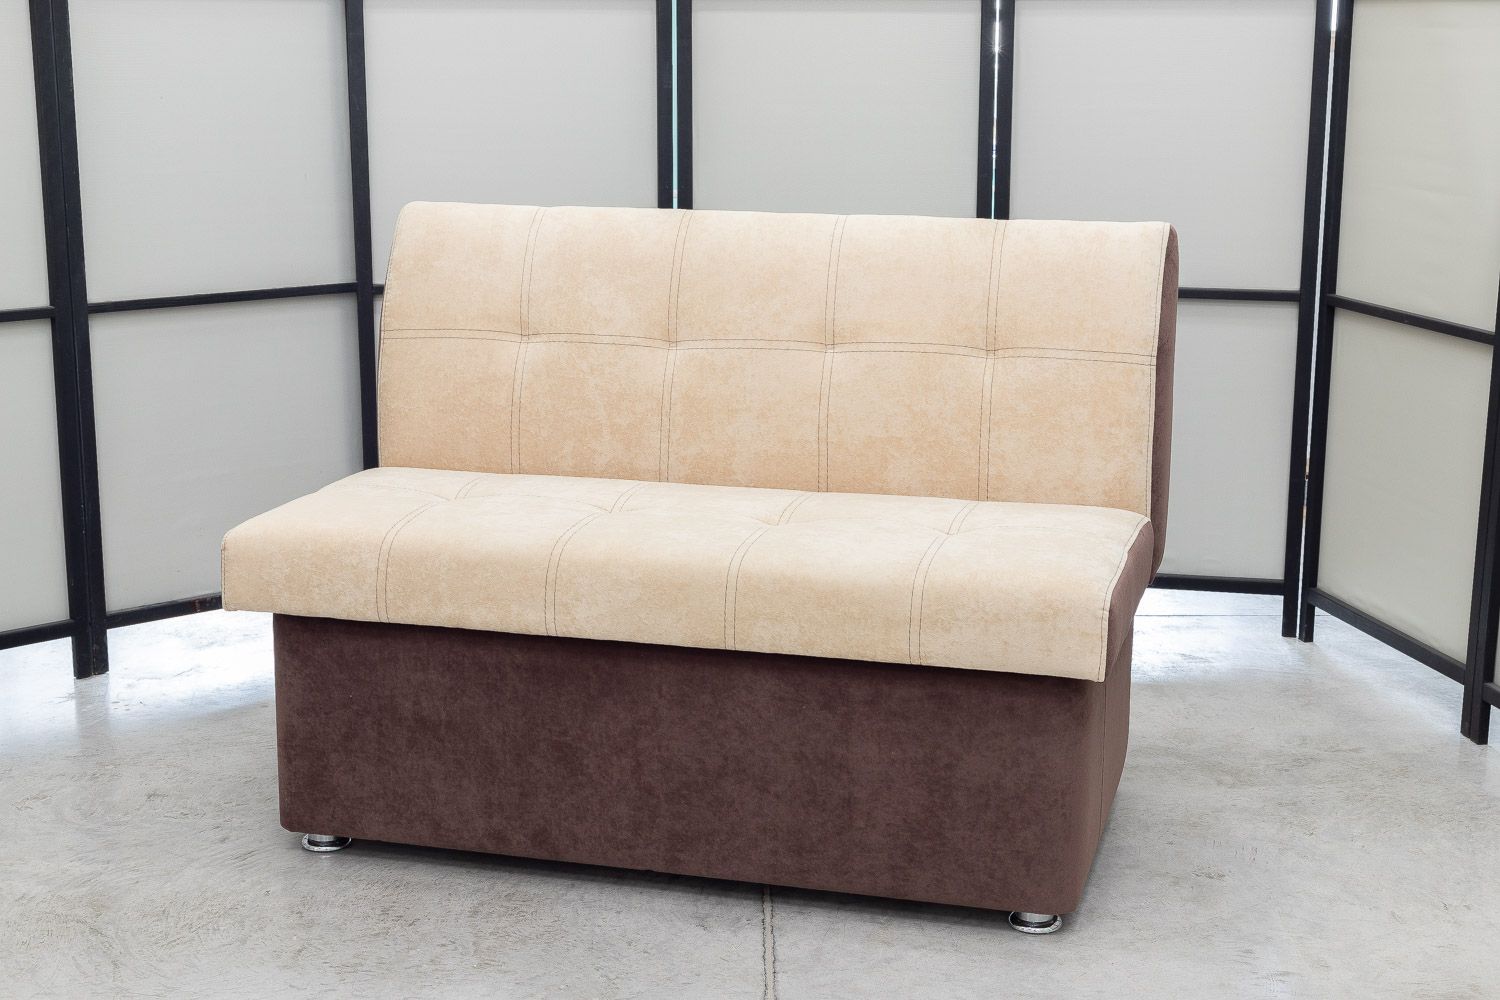 Кухонный прямой диван Тетра с ящиком (антивандальный) купить за 13 800 ₽ вСПб. Цены и фото